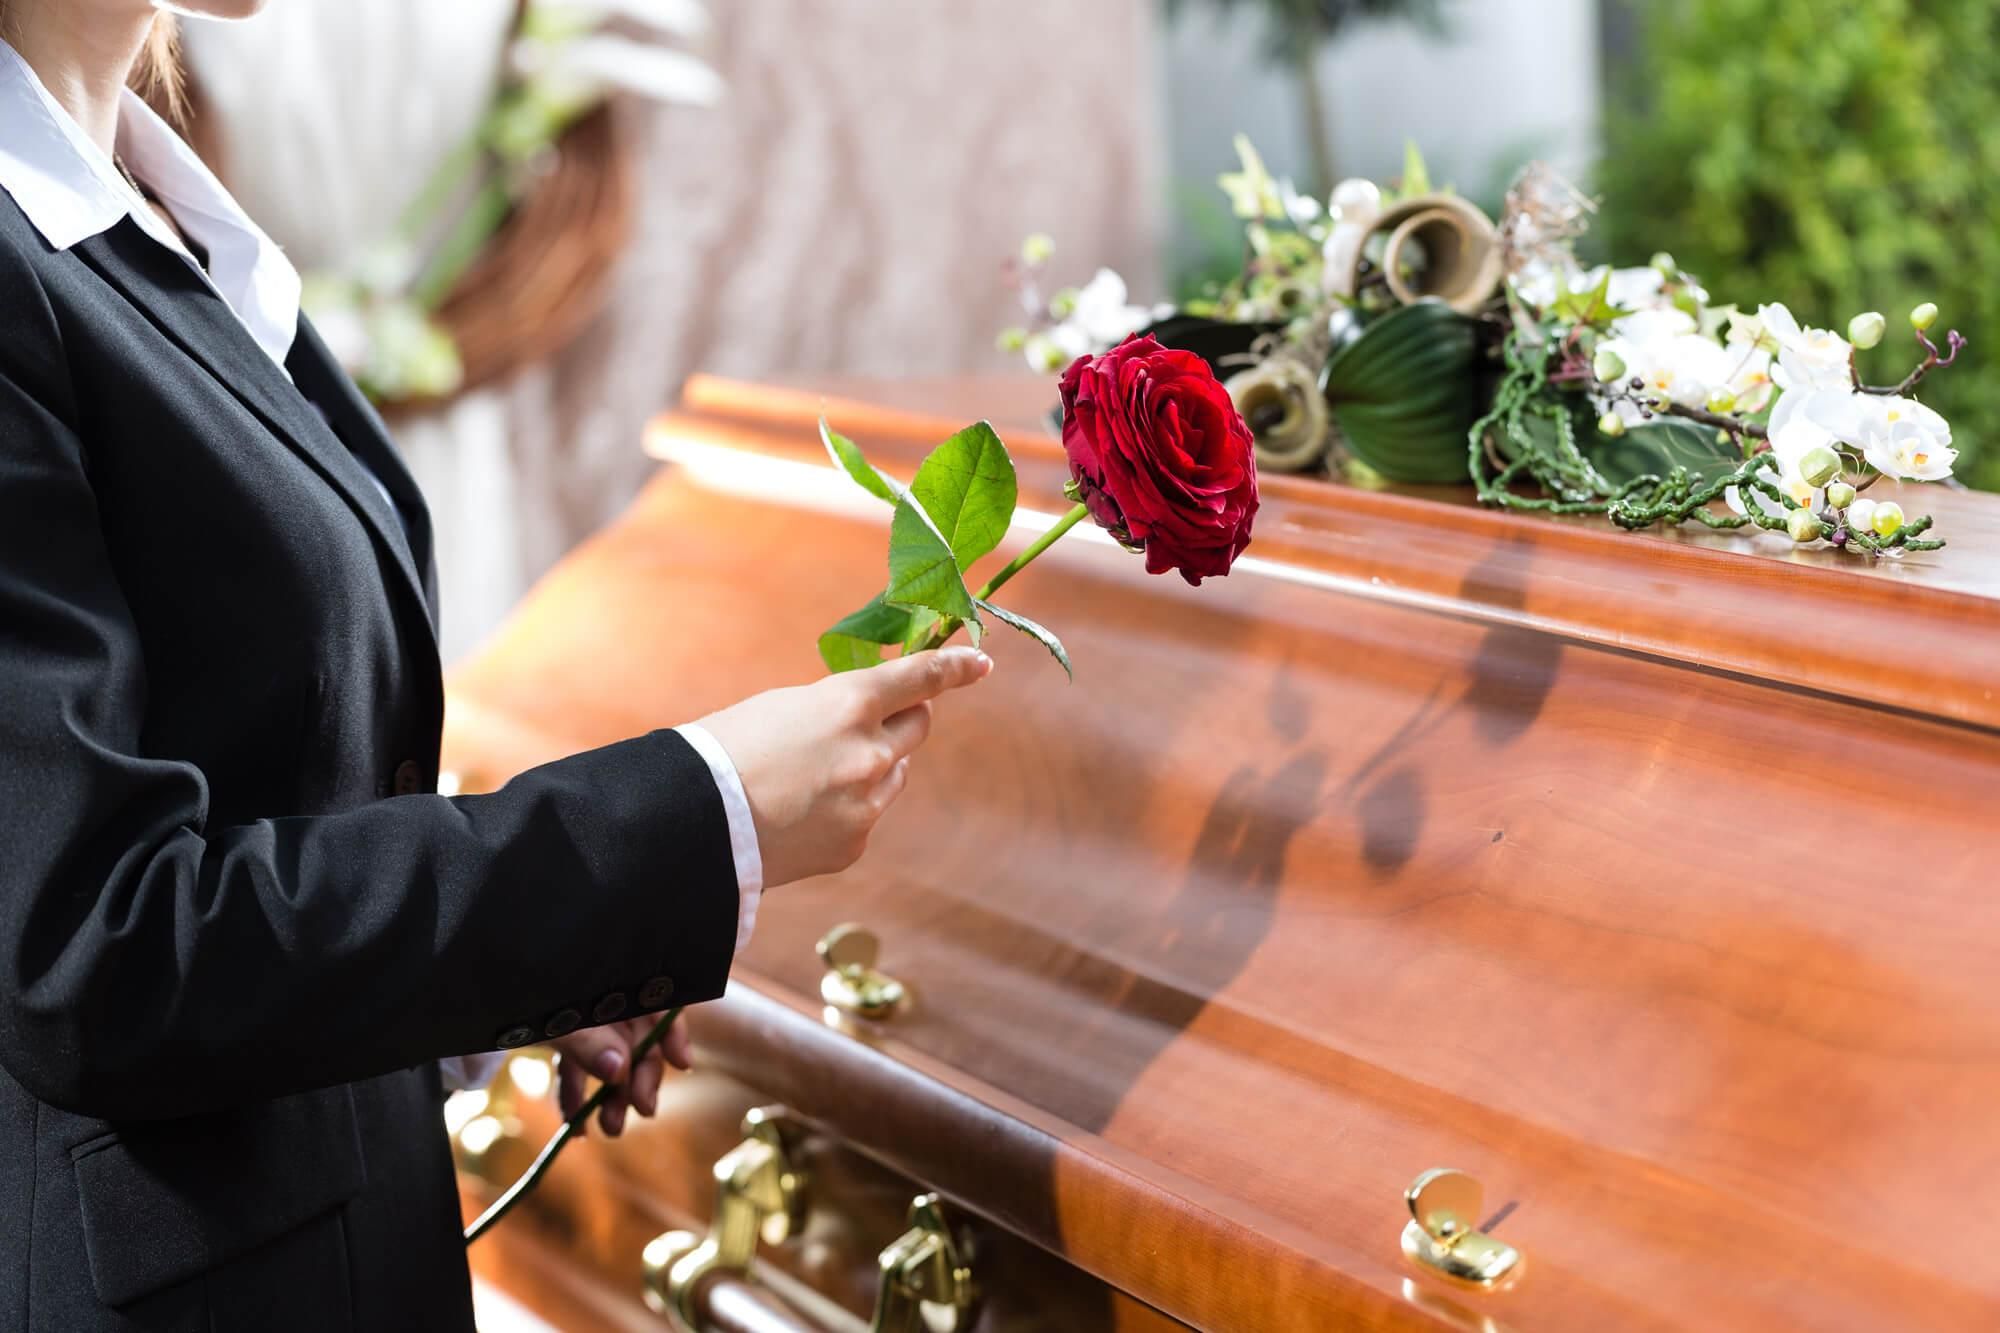 Как хоронить умерших от COVID-19 и нужна ли кремация: объяснение Ляшко